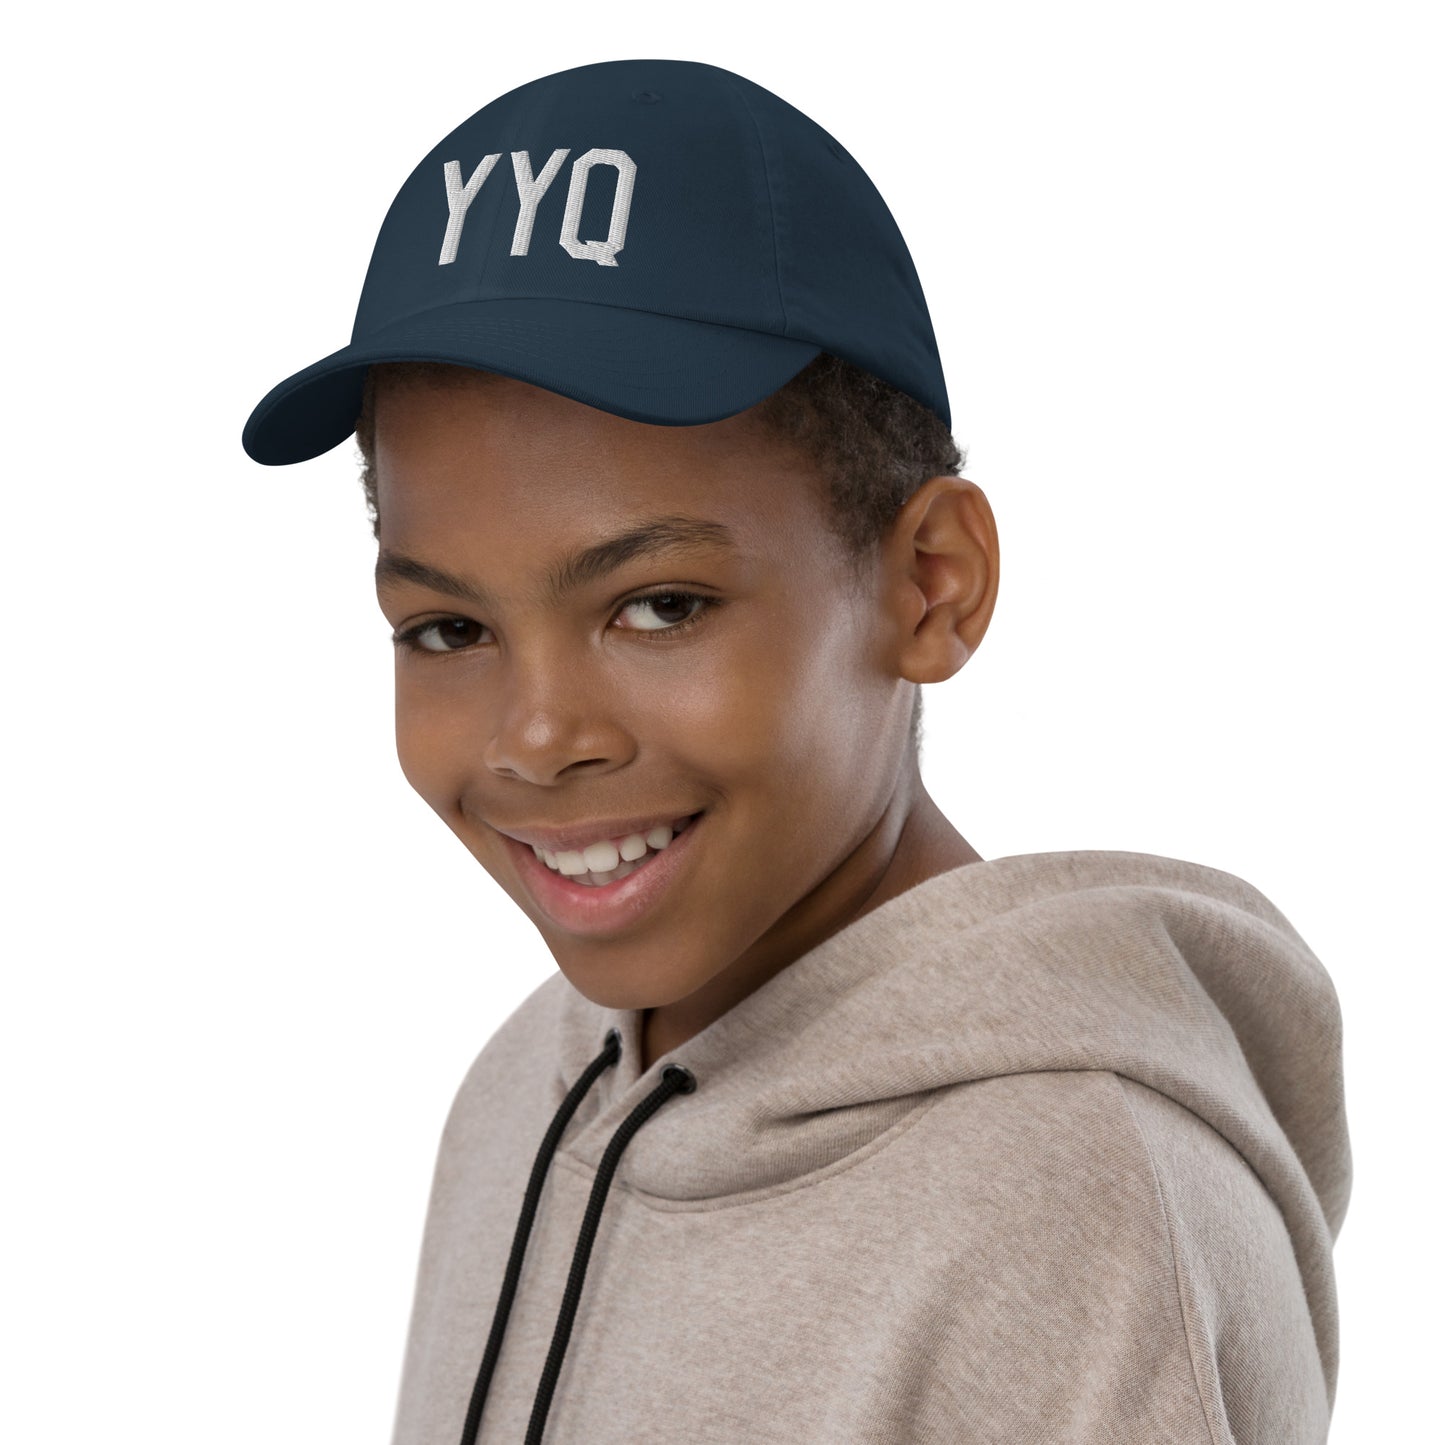 Airport Code Kid's Baseball Cap - White • YYQ Churchill • YHM Designs - Image 03